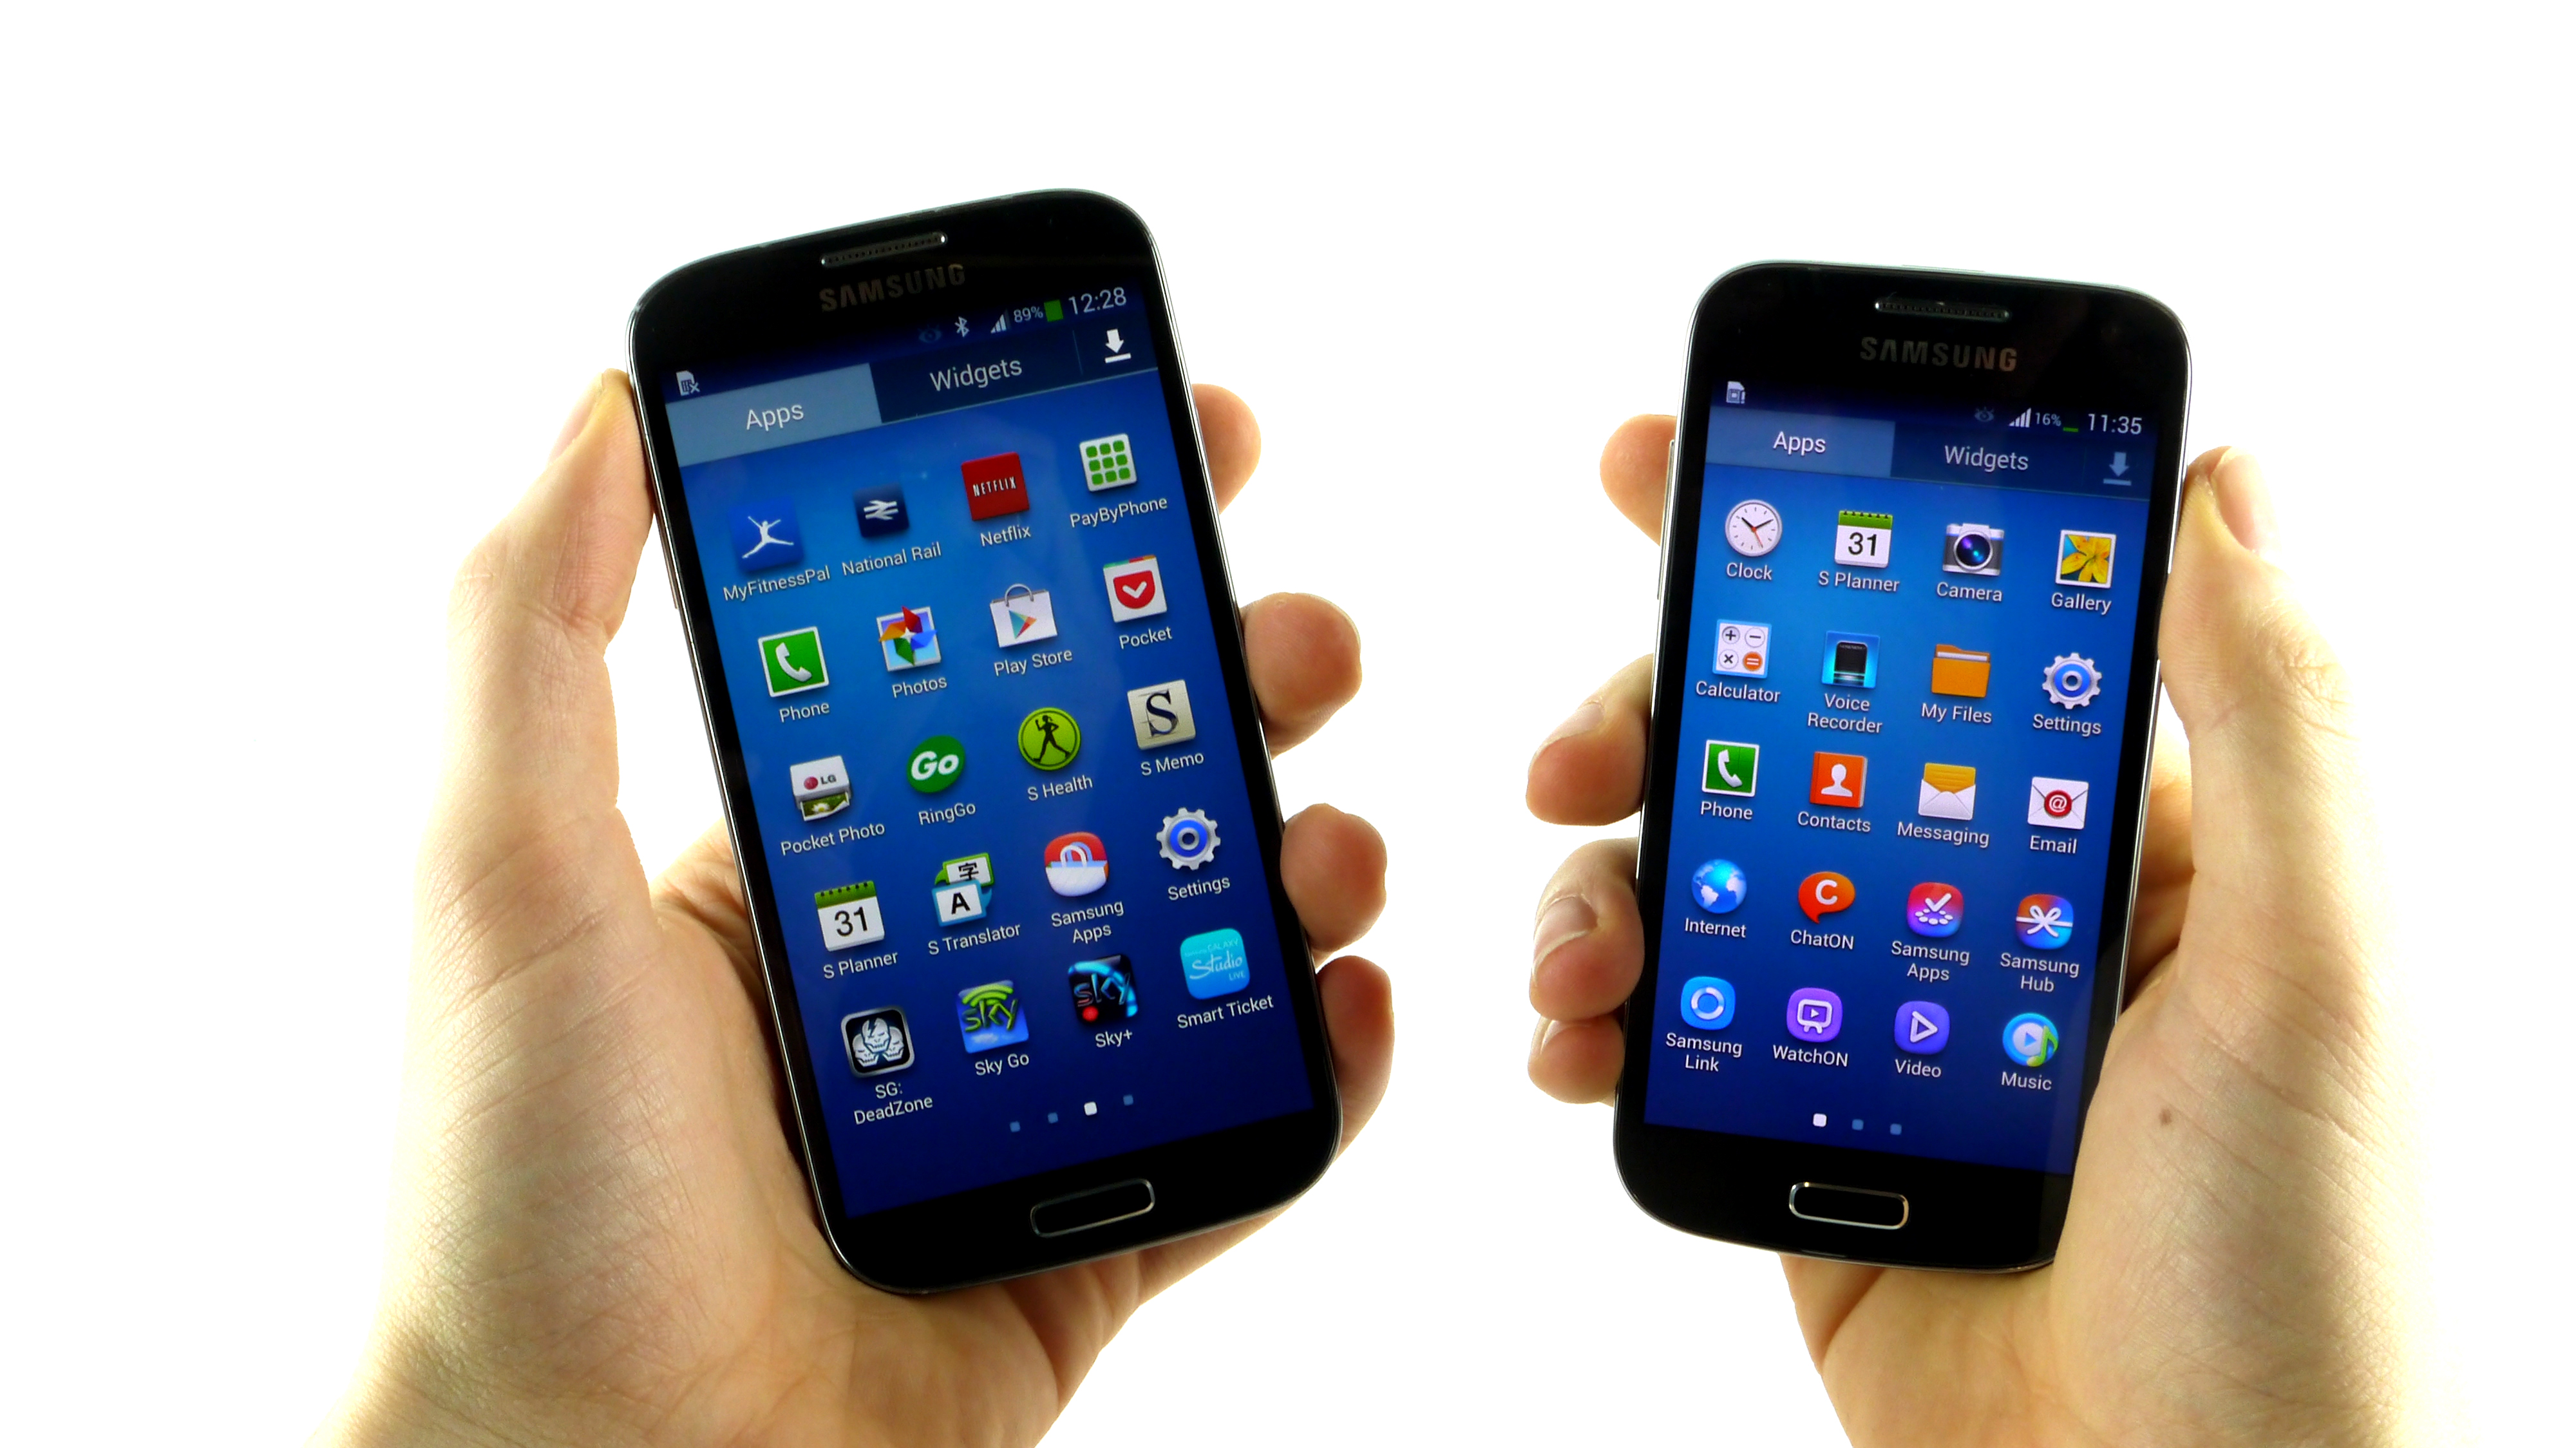 Samsung Galaxy S4 i Galaxy S4 mini